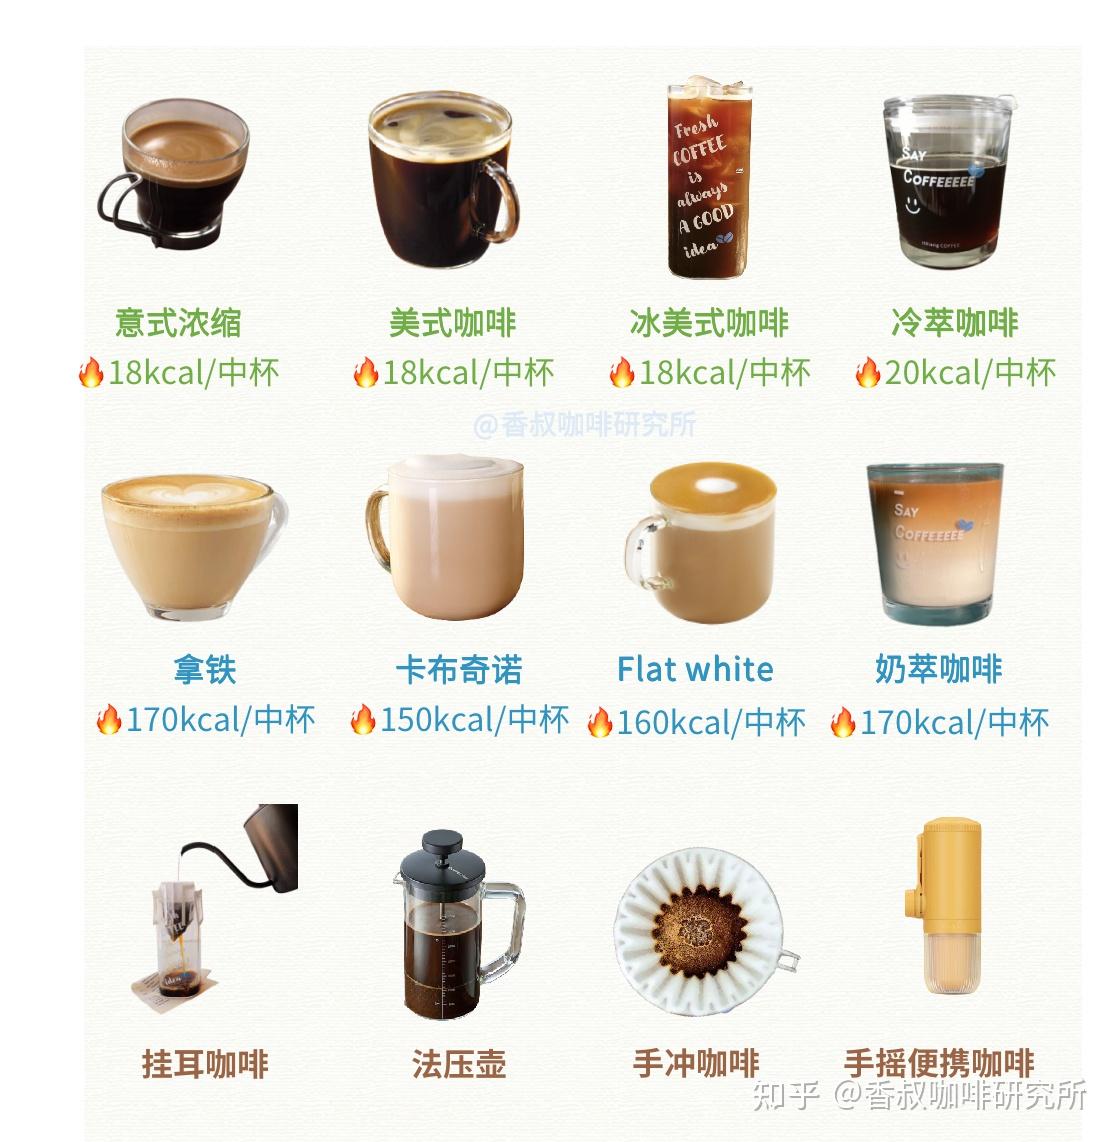 豆雅国际COFFEE——咖啡知识-咖啡介绍-新闻中心-豆雅国际COFFEE